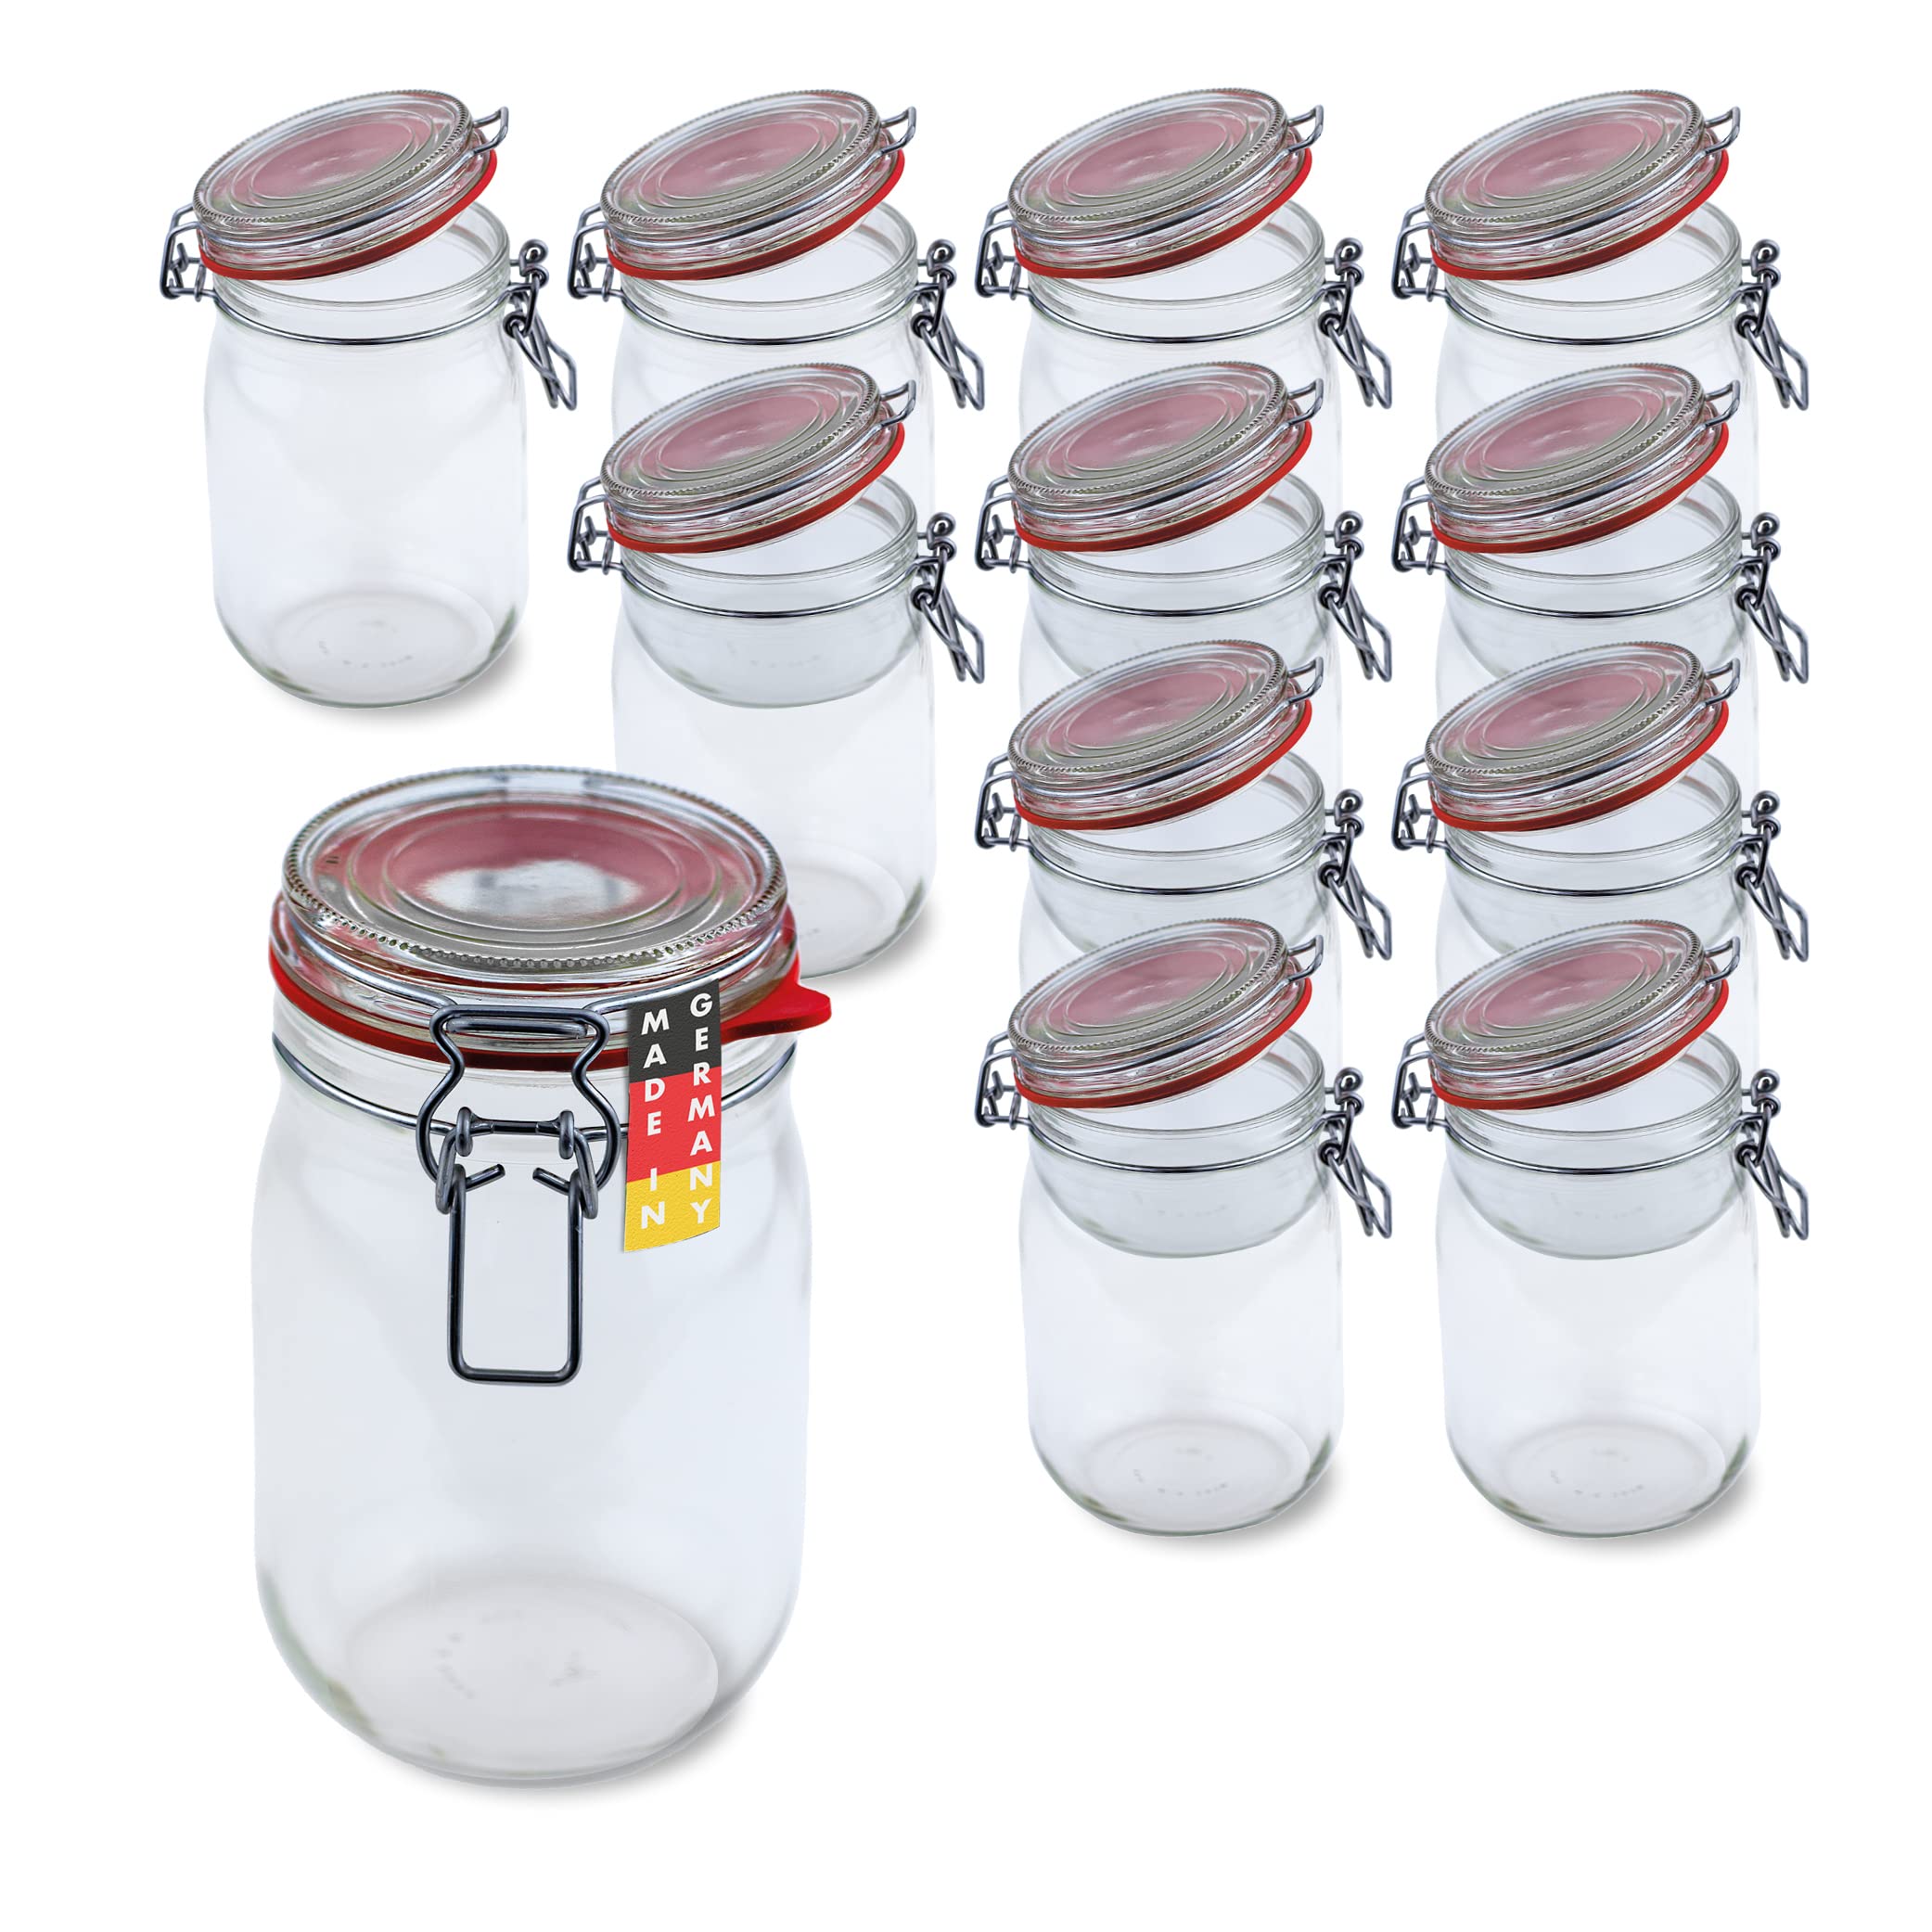 Flaschenbauer- 12 Drahtbügelgläser 1140ml verwendbar als Einmachglas und Fermentierglas, zu Aufbewahrung, Gläser zum Befüllen, Leere Gläser mit Drahtbügel - Made in Germany